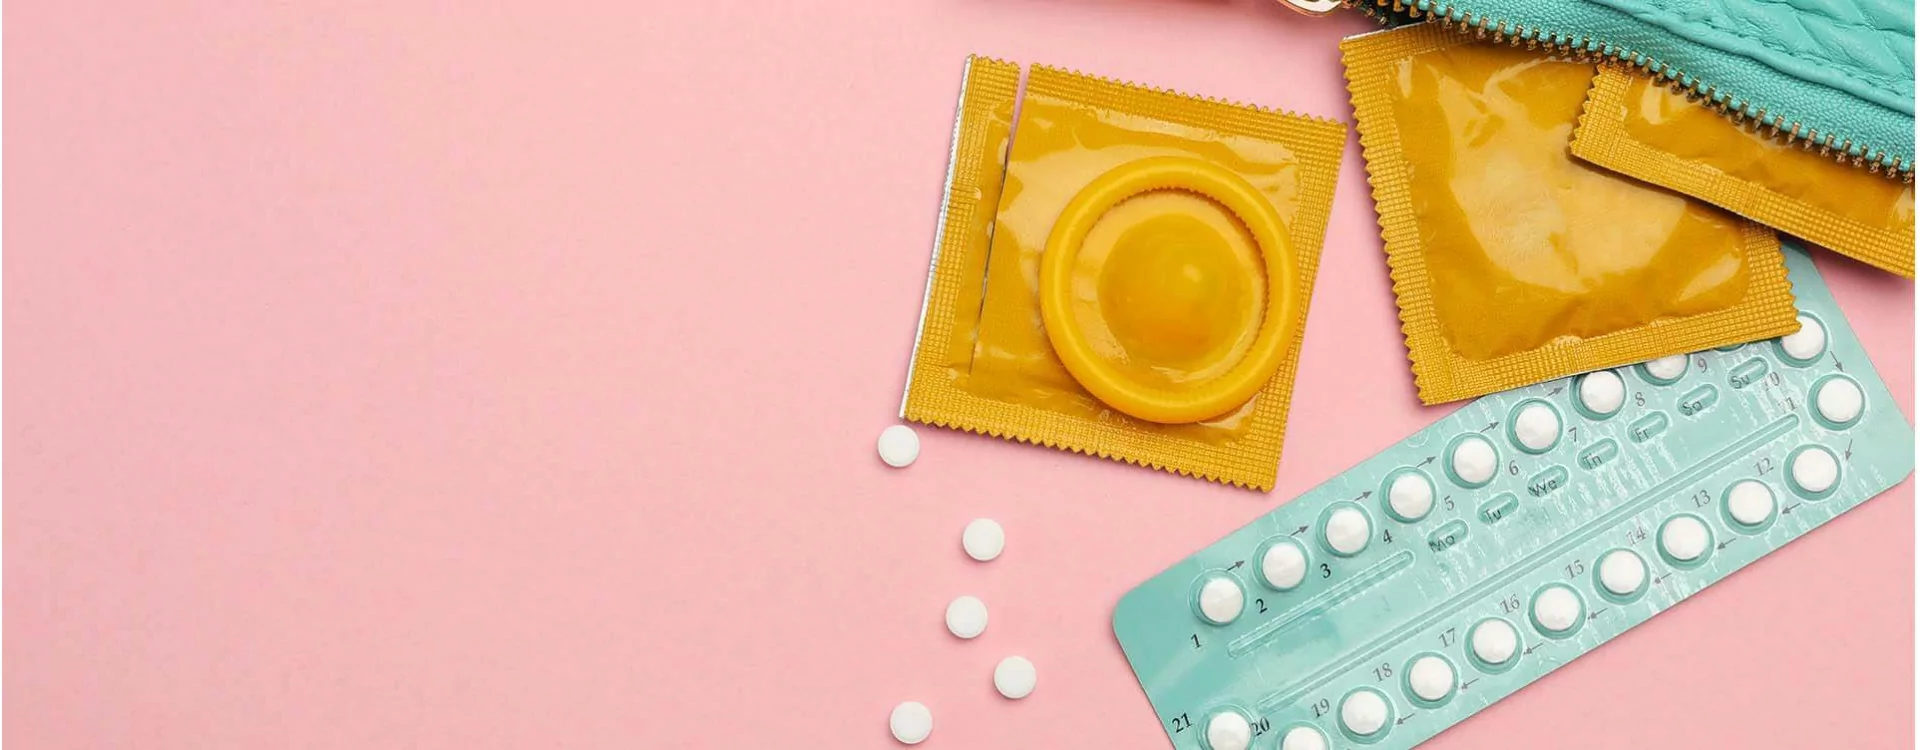 La contraception sans tabou